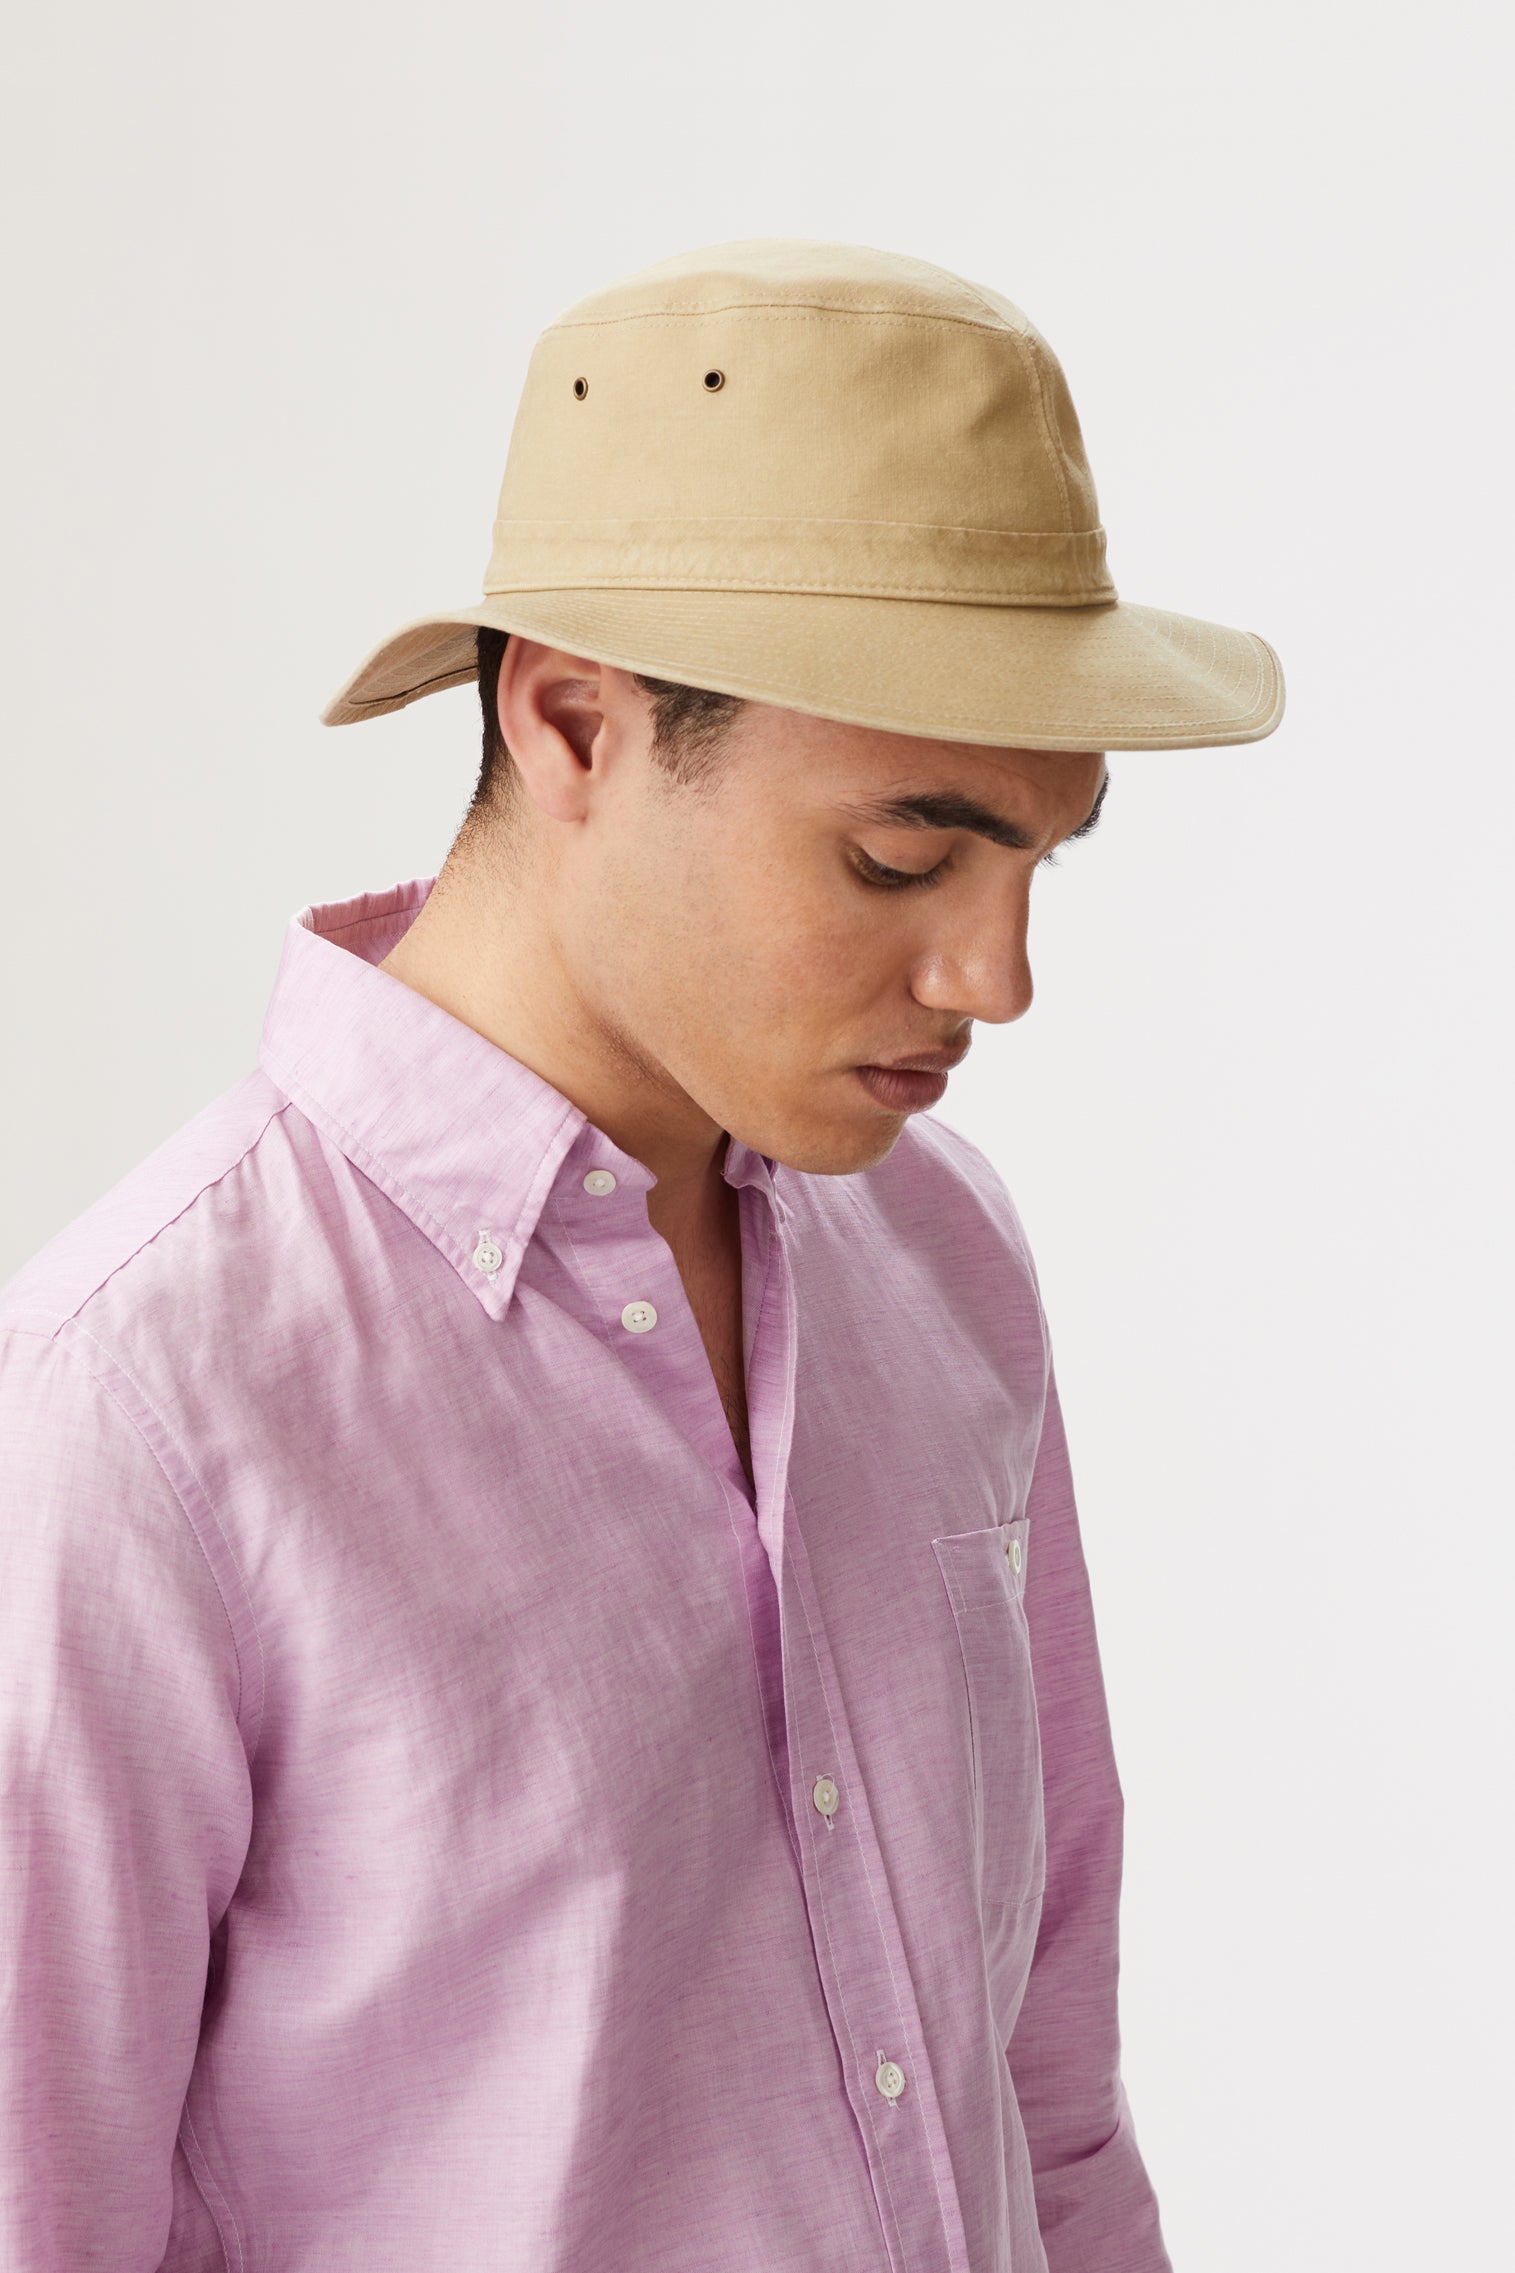 Capri Rollable Hat - Cotton & Linen Hats & Caps - Lock & Co. Hatters London UK